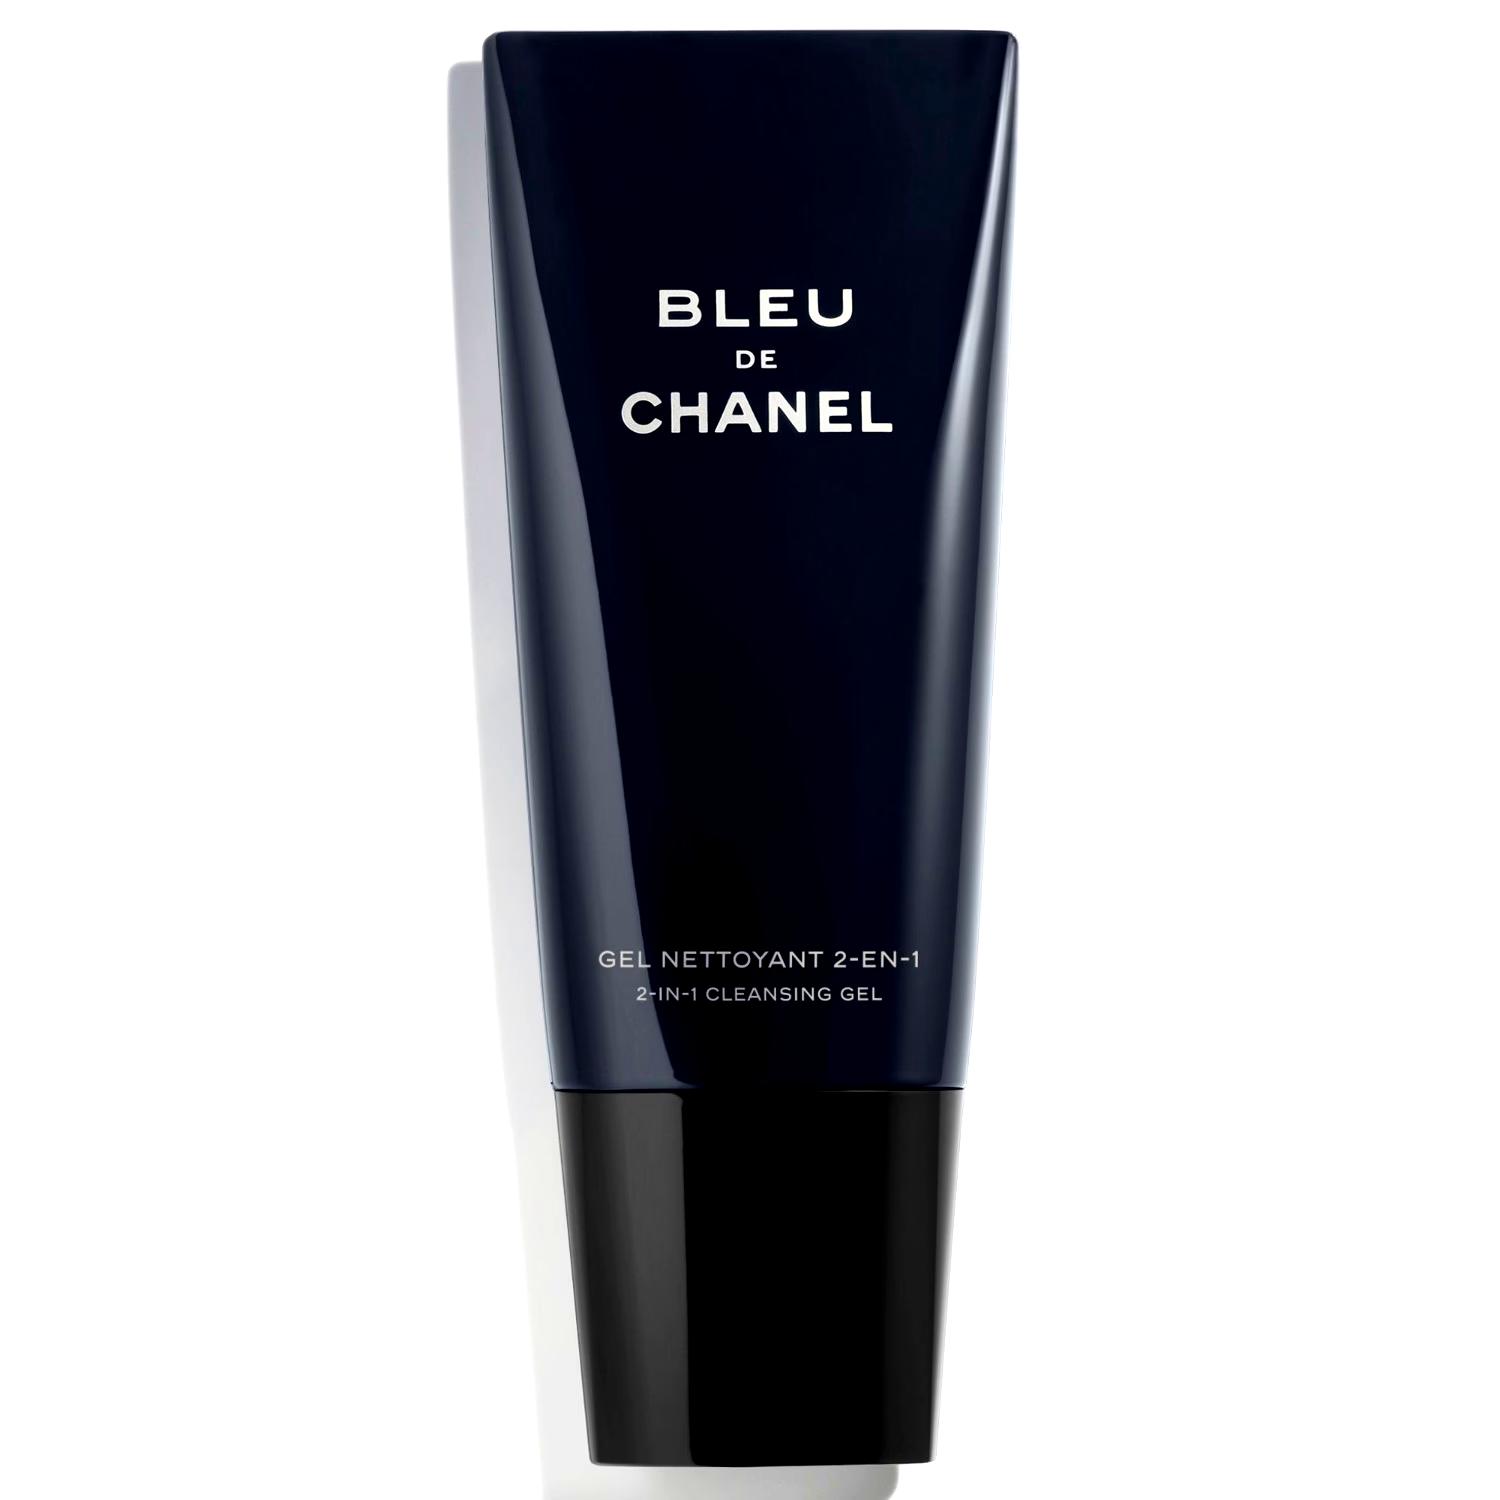 Chanel Bleu de Chanel 2-in-1 cleaning gel